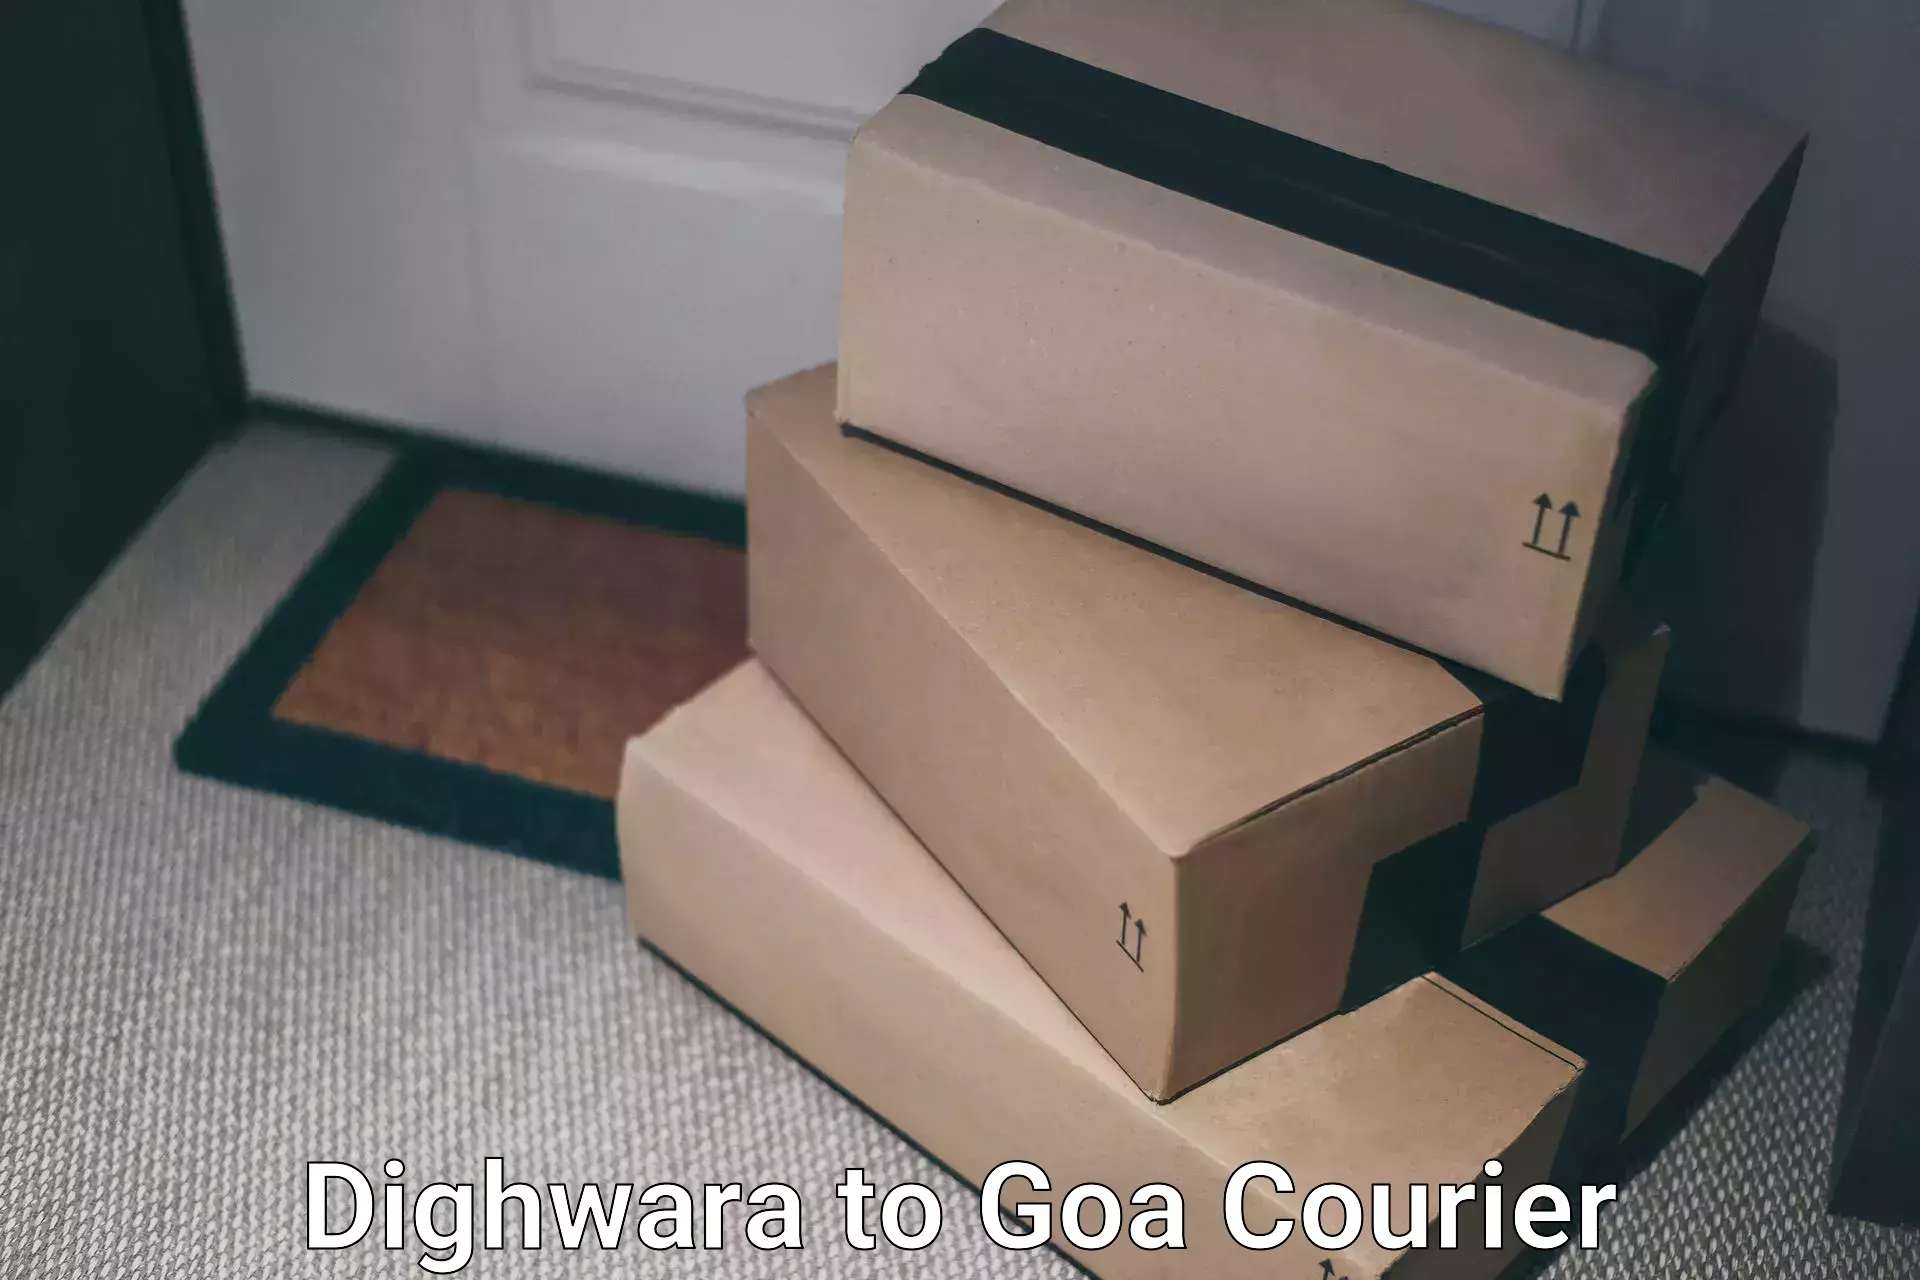 Nationwide shipping capabilities Dighwara to Mormugao Port